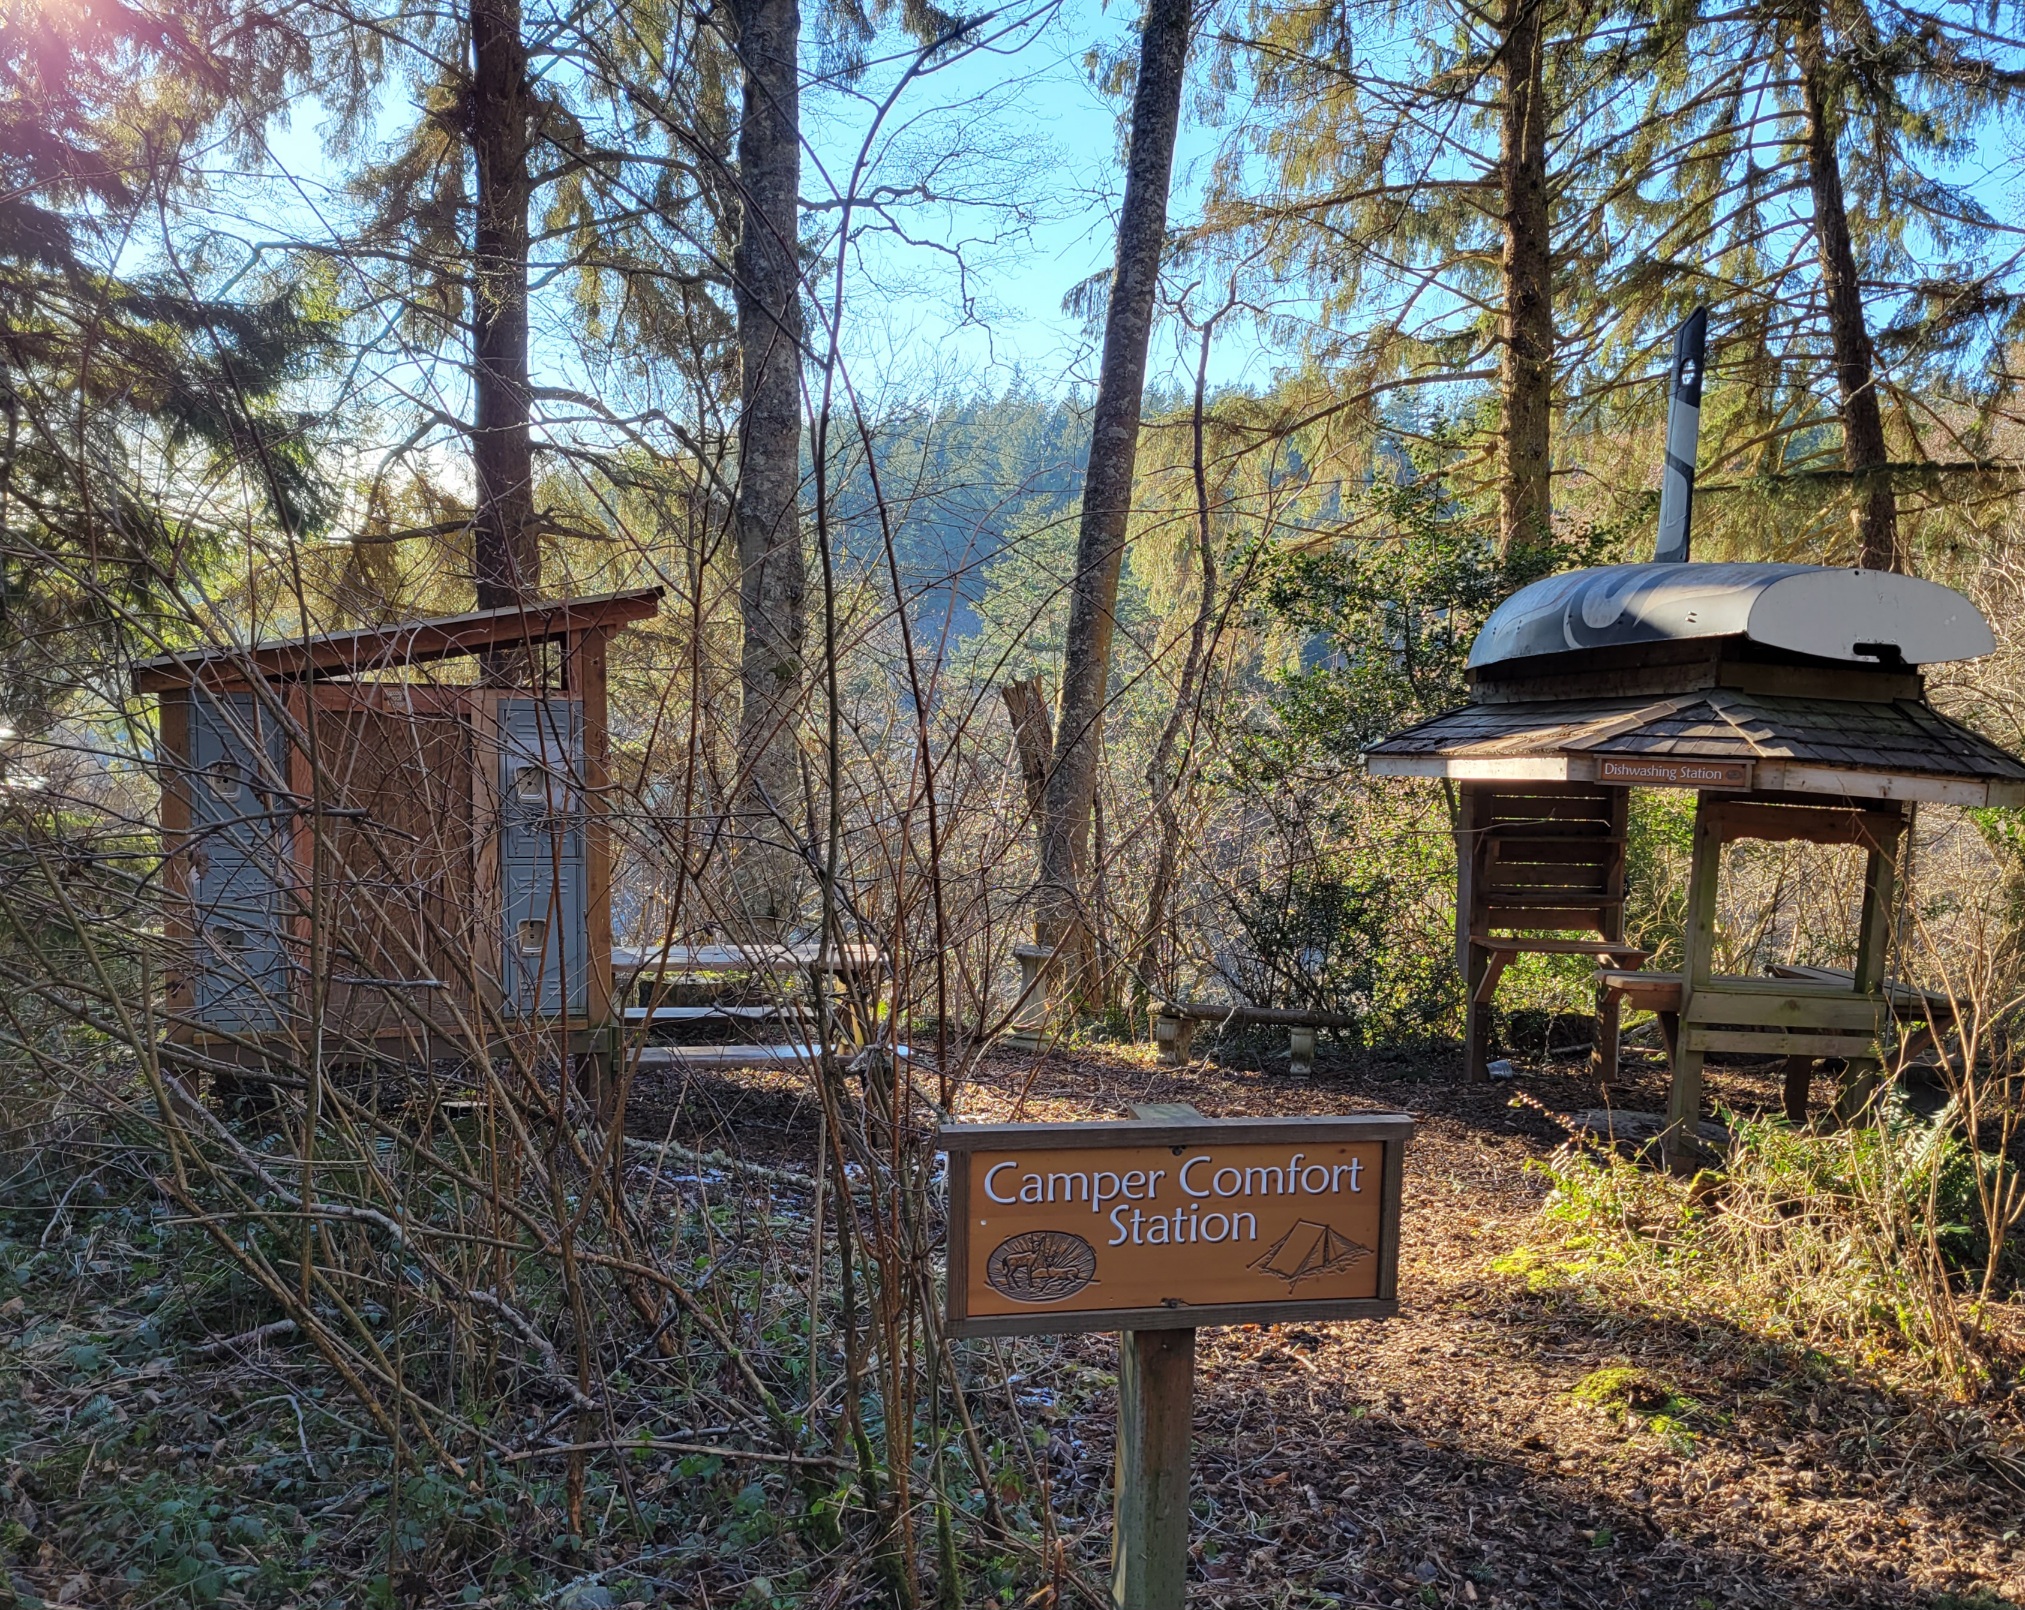 "camper comfort station"